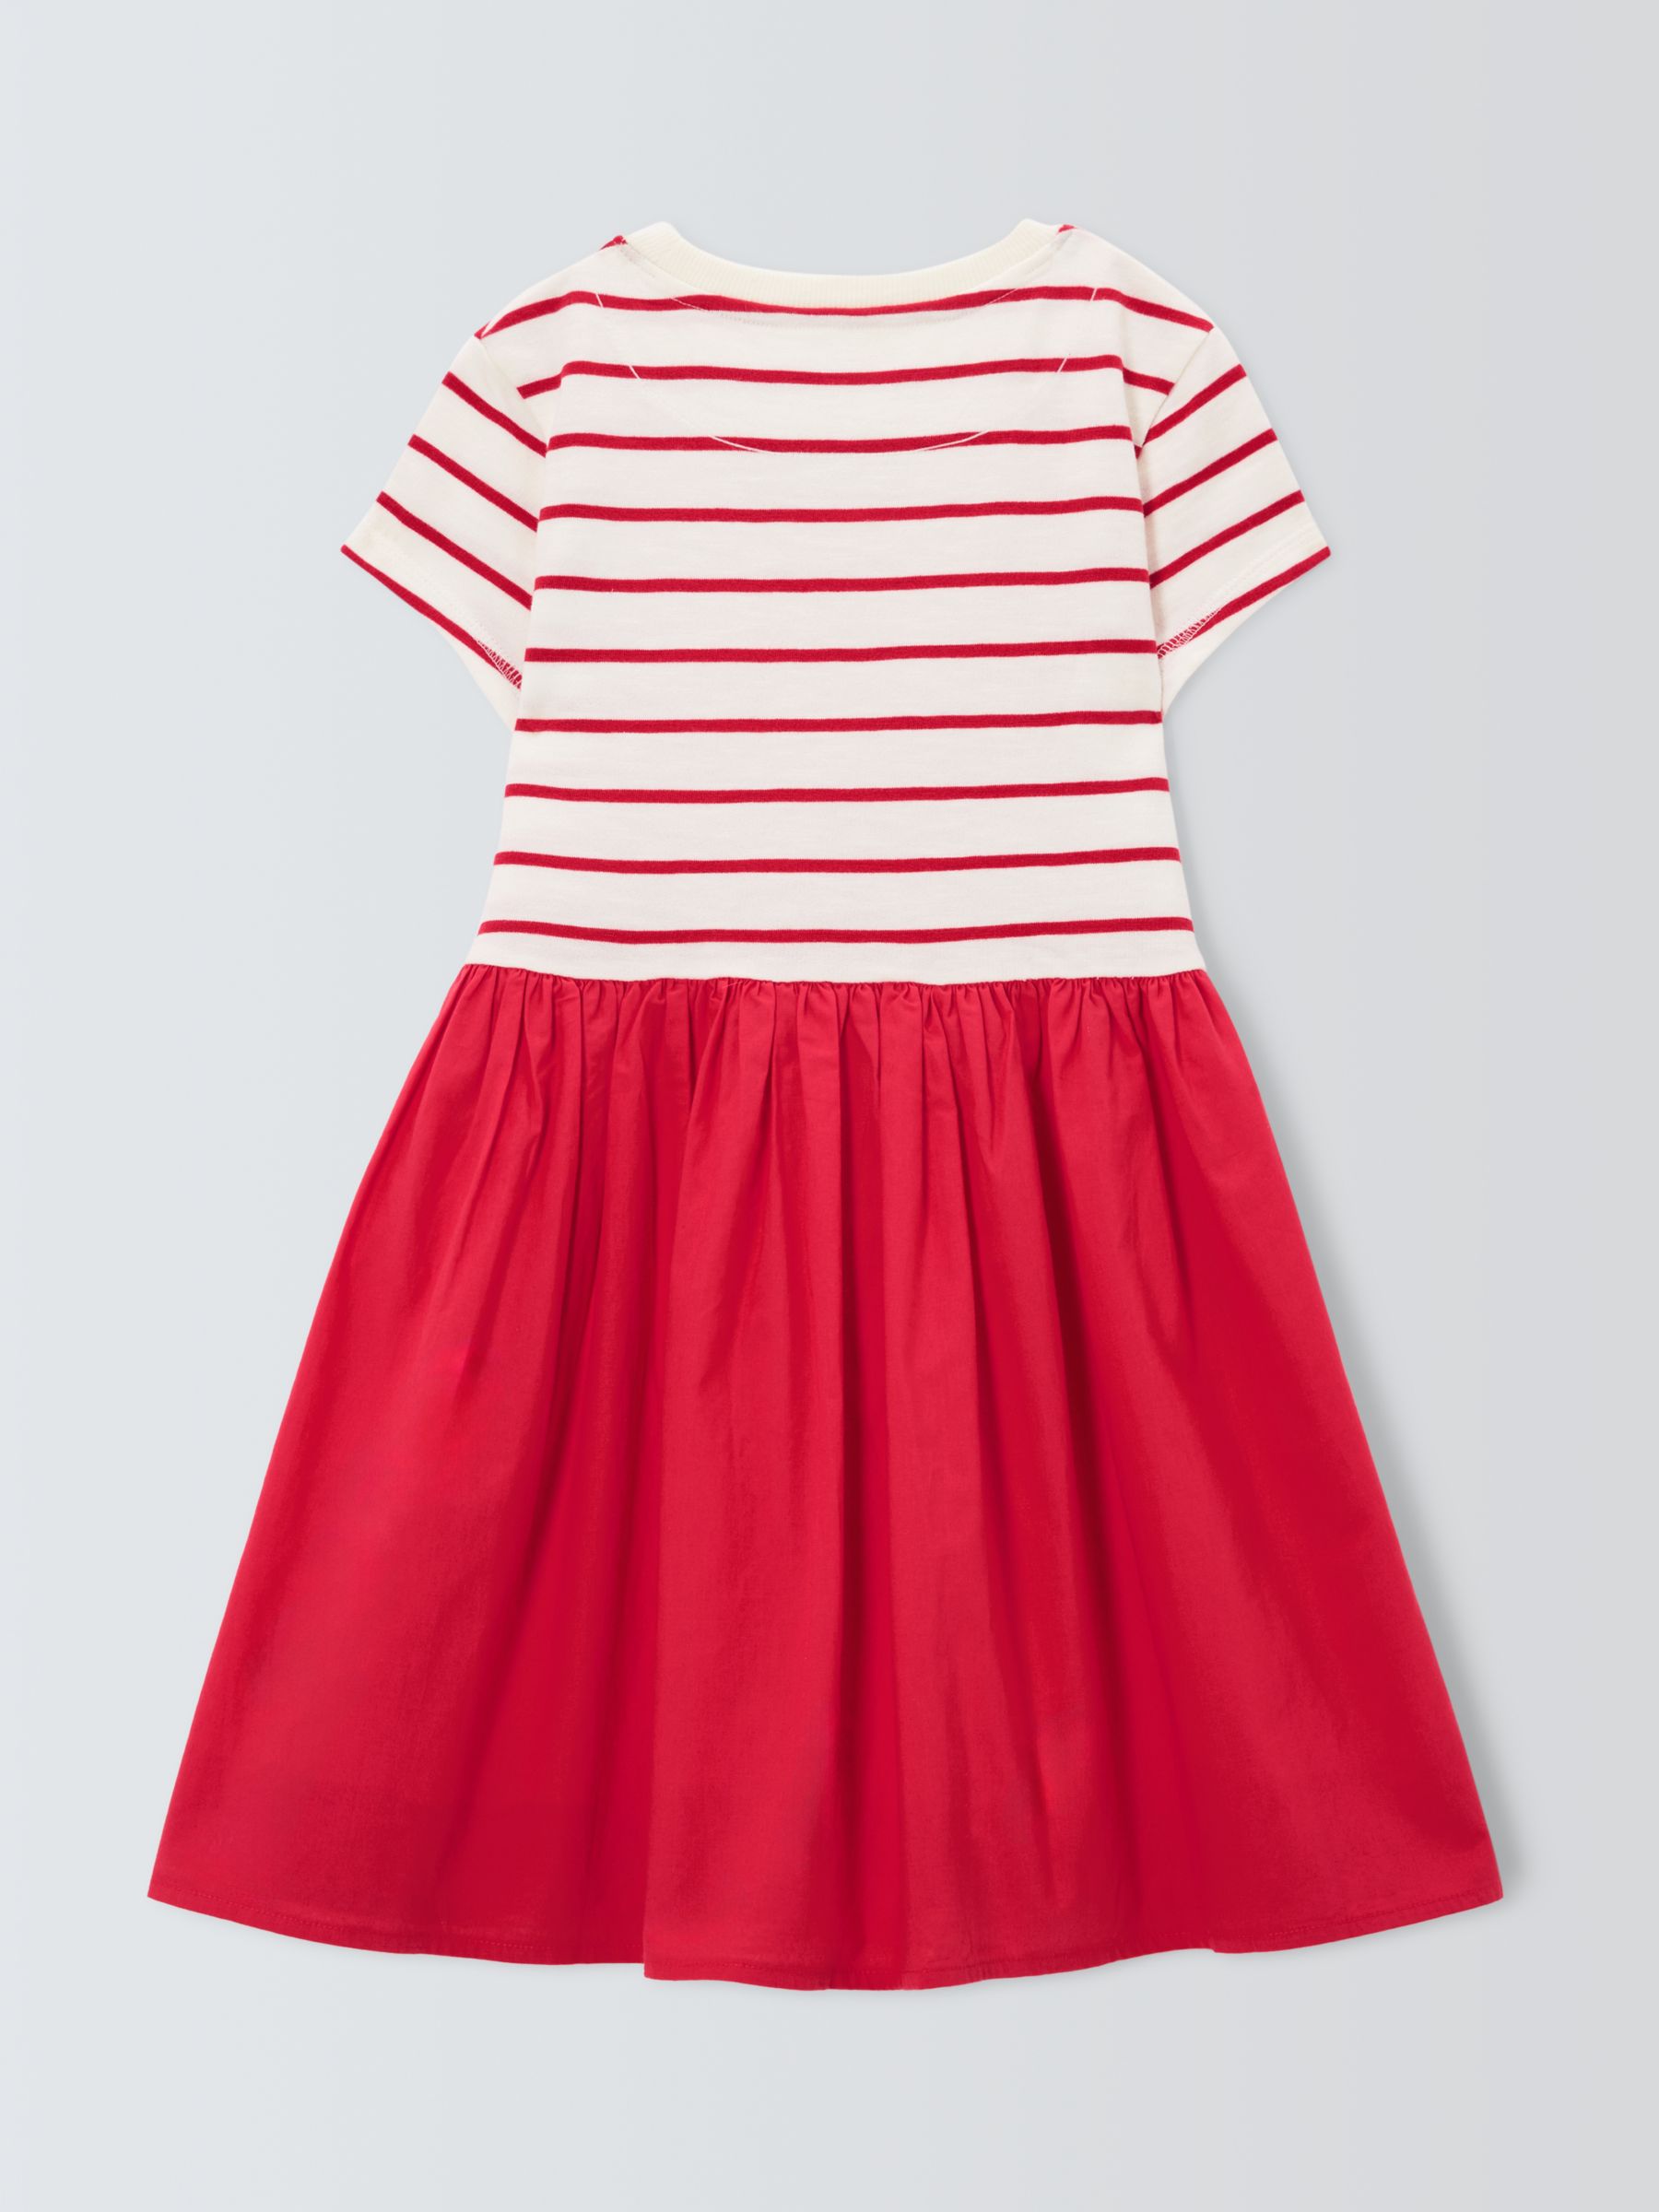 John Lewis Kids' Half Stripe Dress, Red/White, 10 years